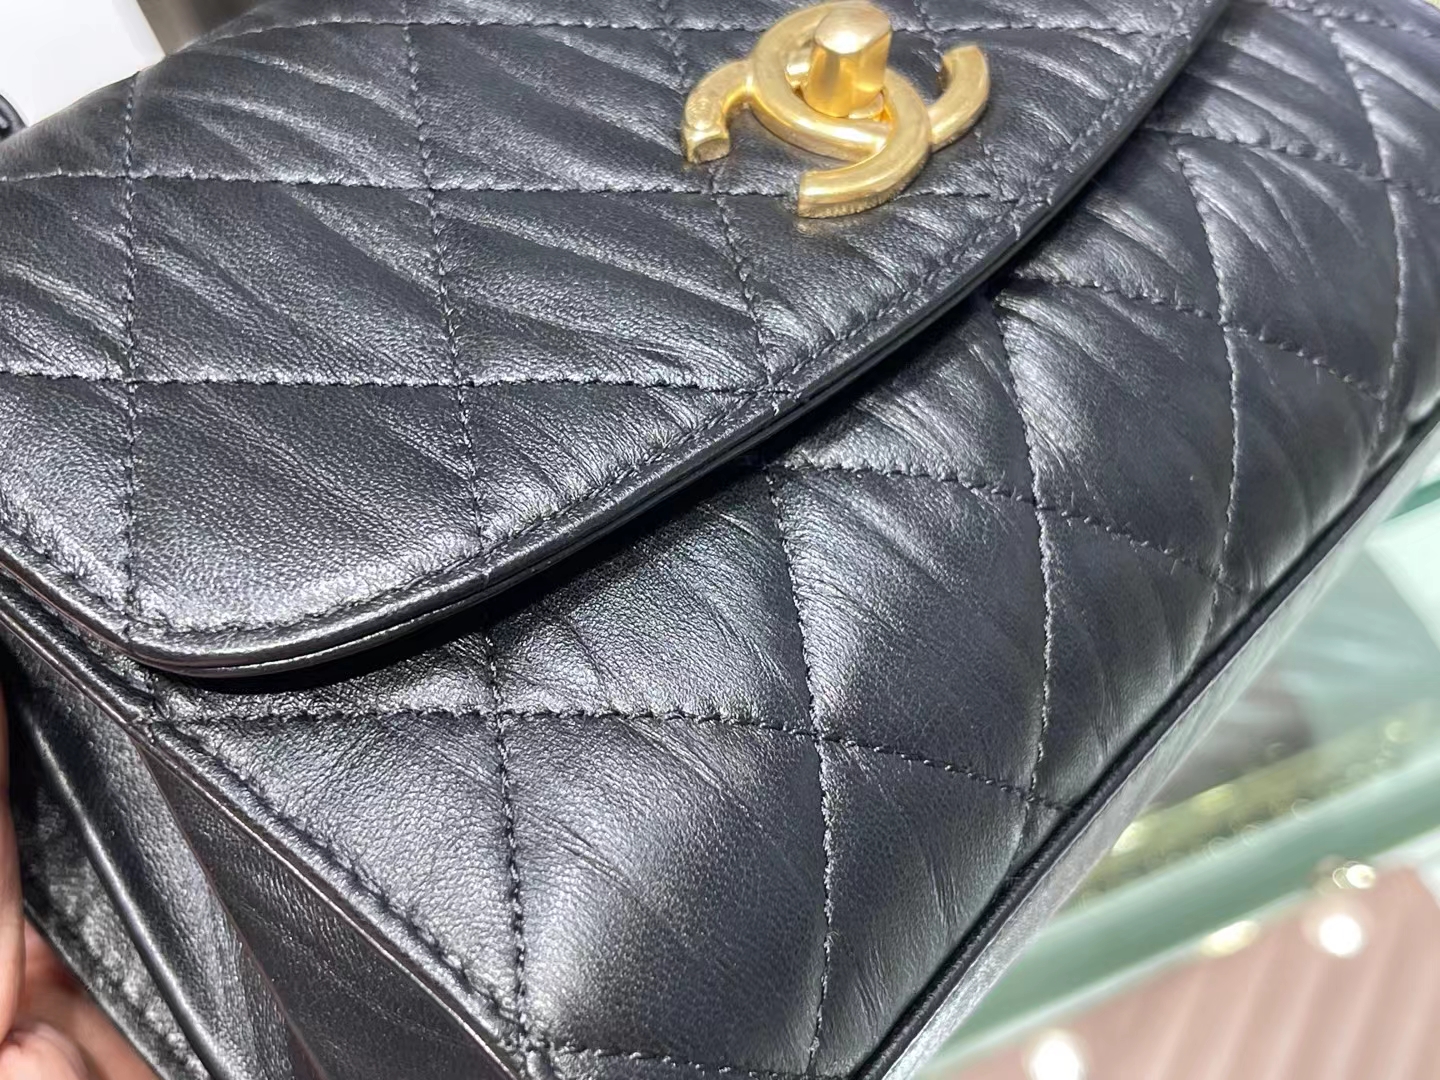 Chanel（香奈儿）2021 最新 迷你手提口盖包 小羊皮褶皱 黑色 金扣 金链